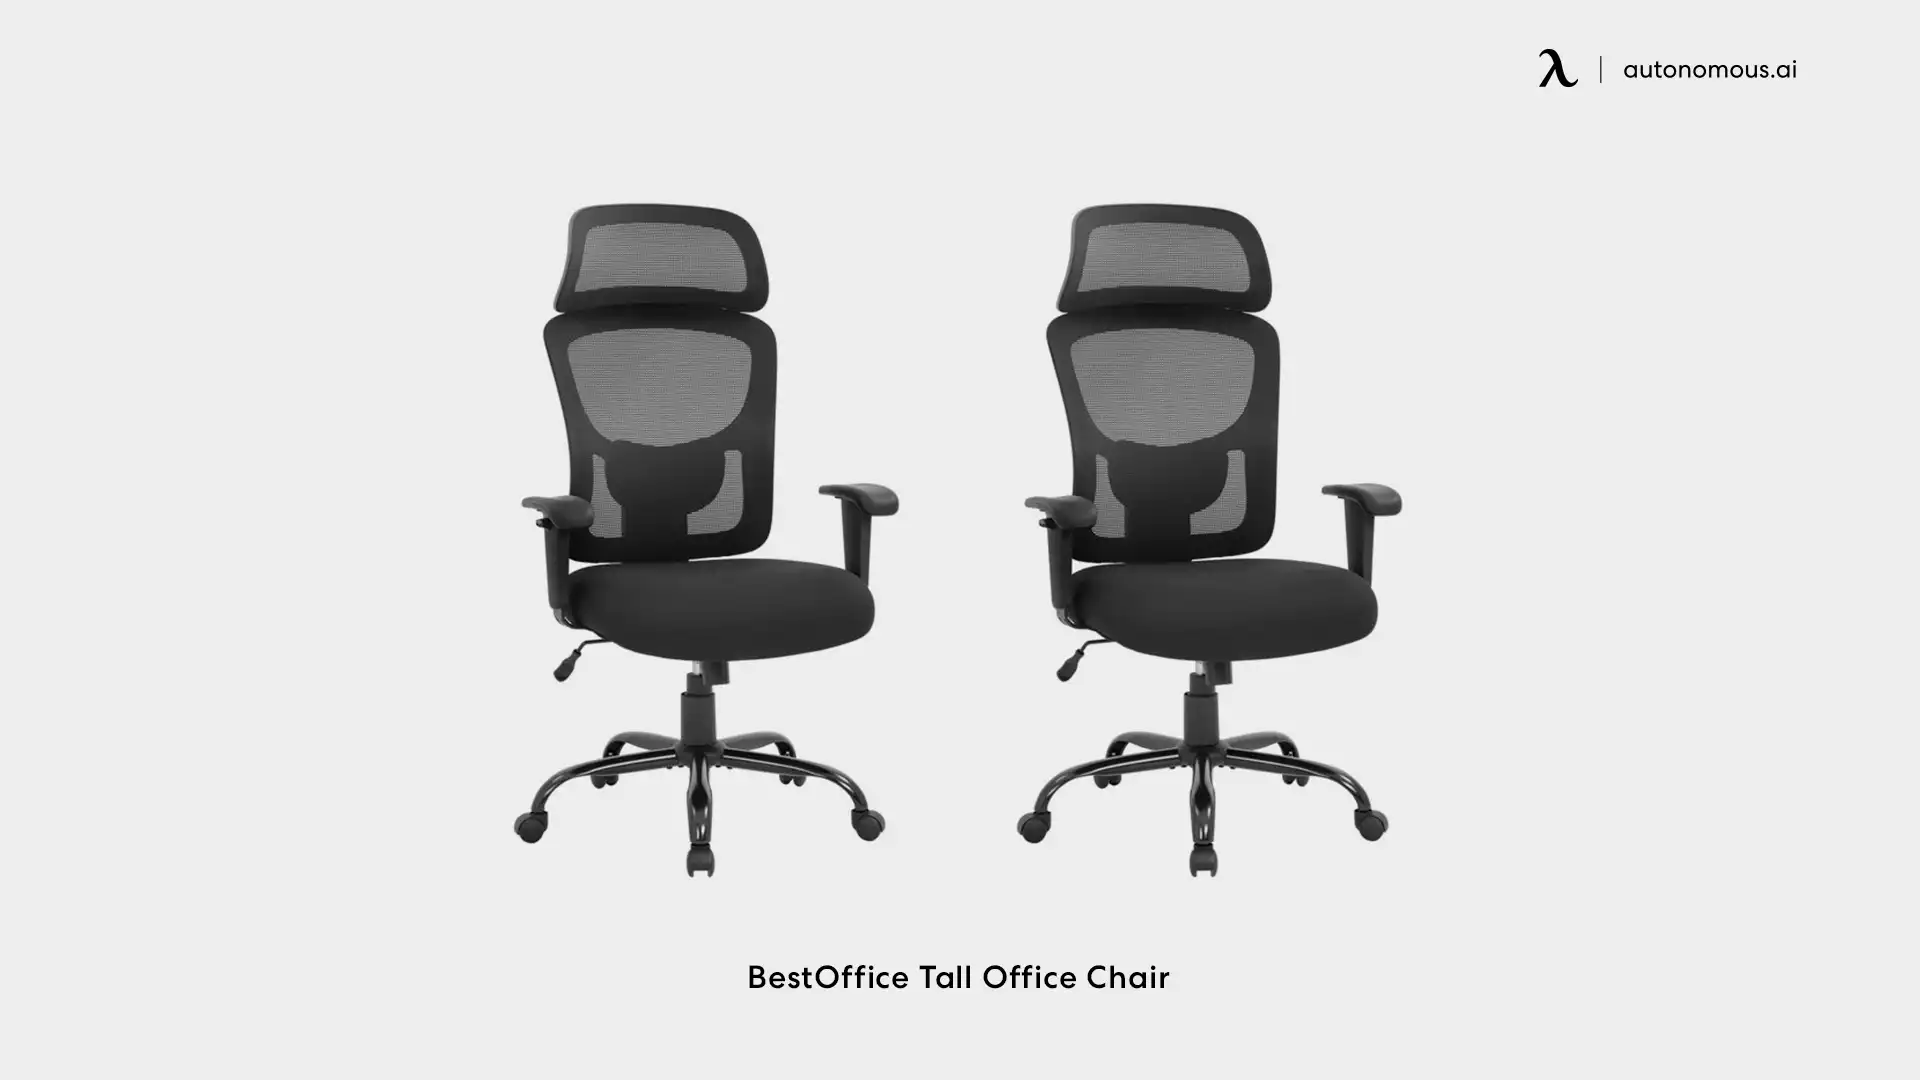 BestOffice tall office chair massaging office chair